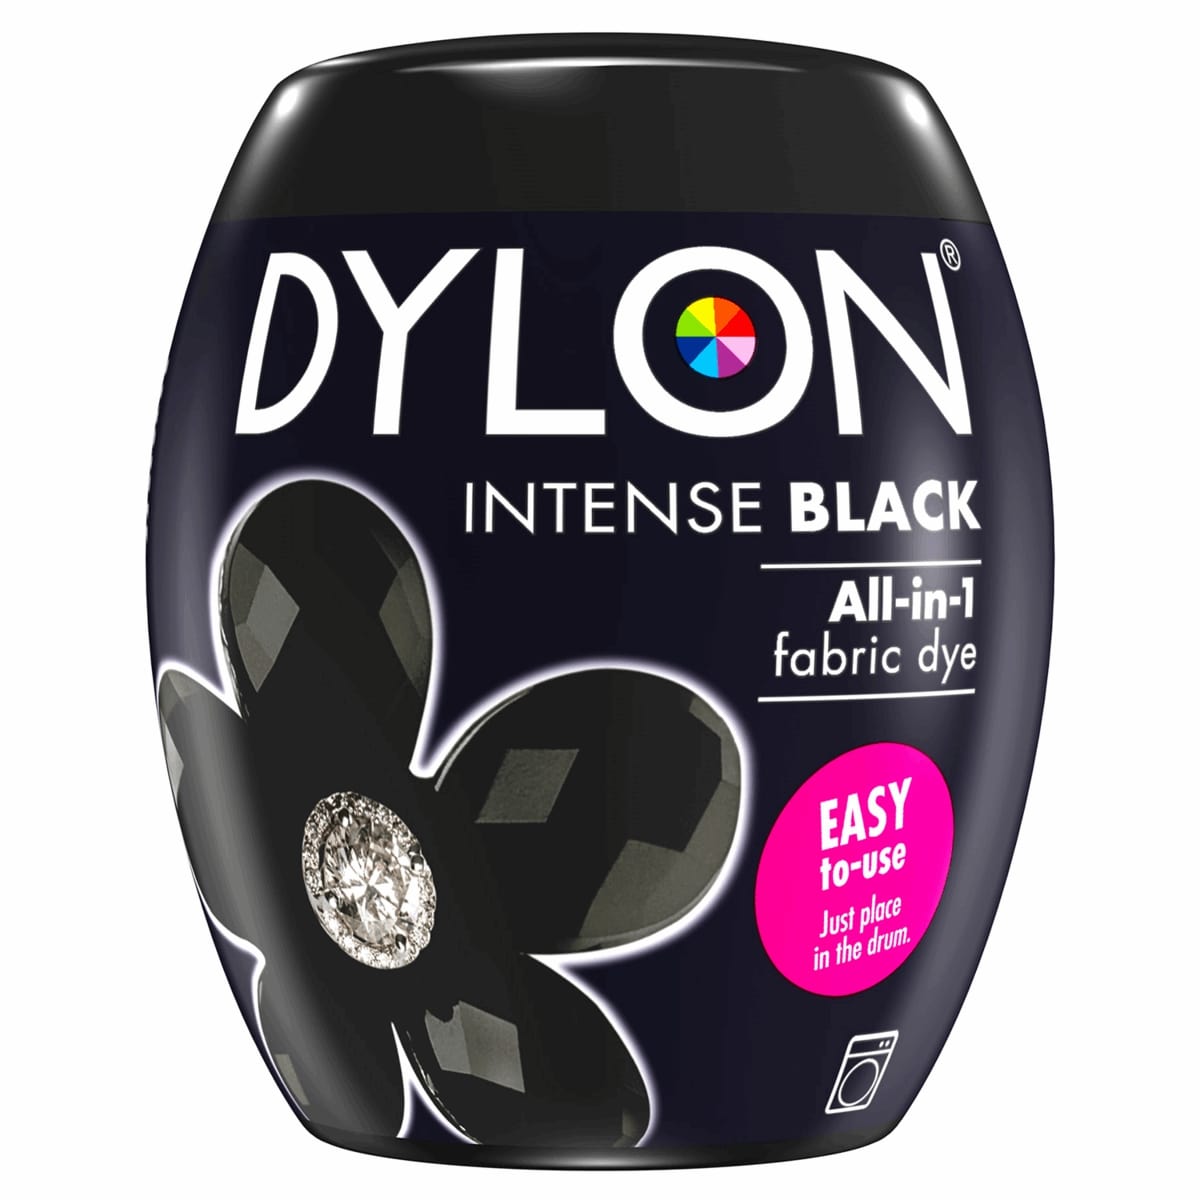 Dylon Machine Dye: Pod: 12 Intense Black